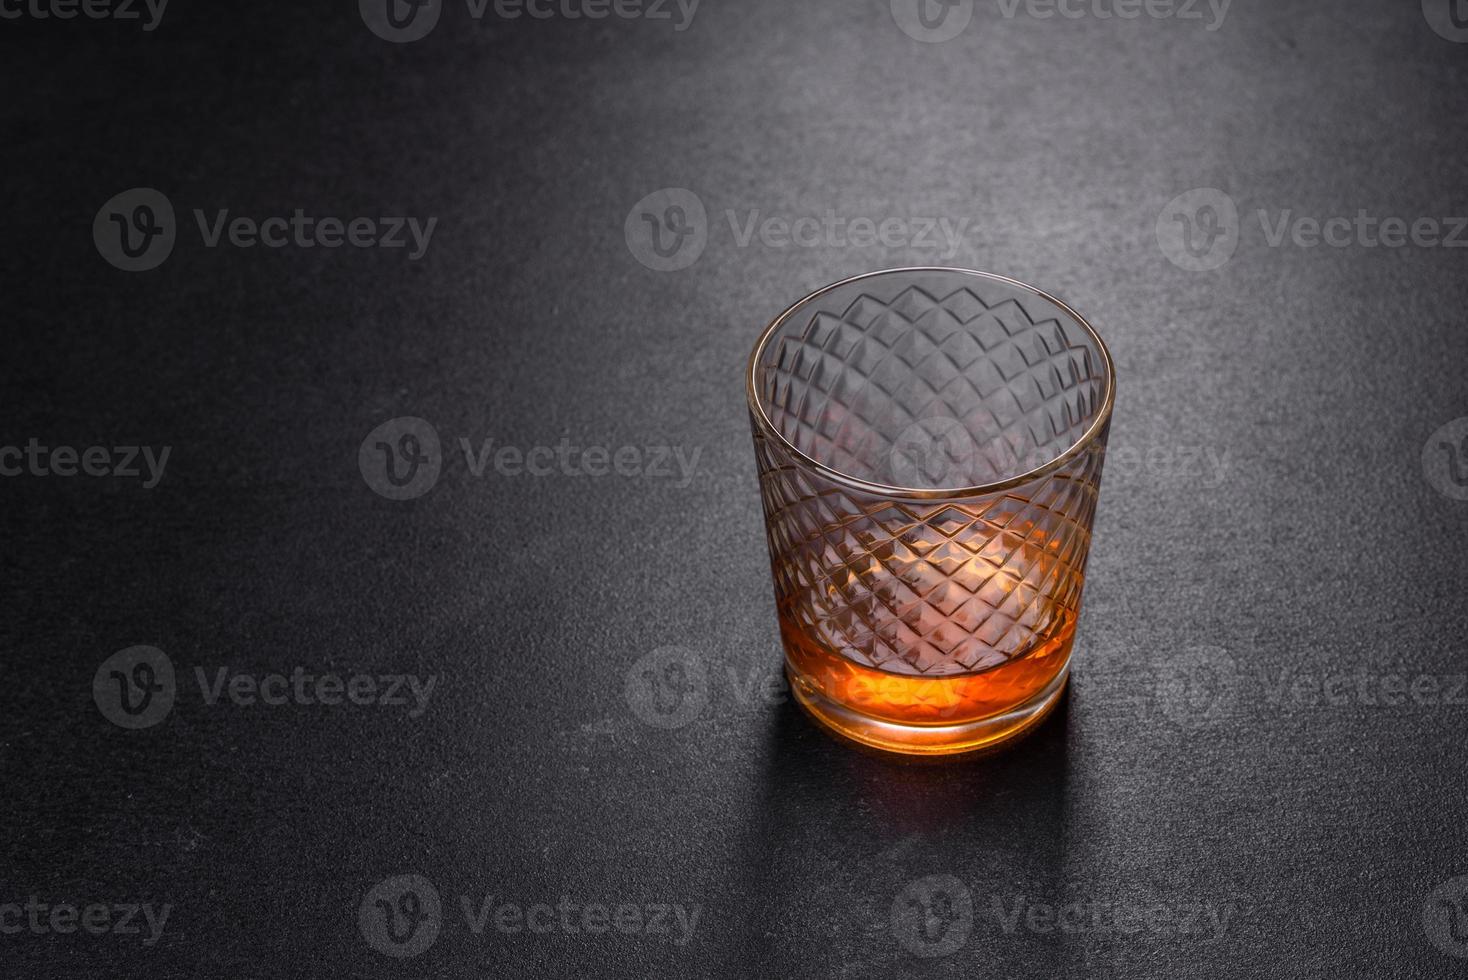 een glas whisky of cognac op een zwarte betonnen tafel. ontspanningstijd foto